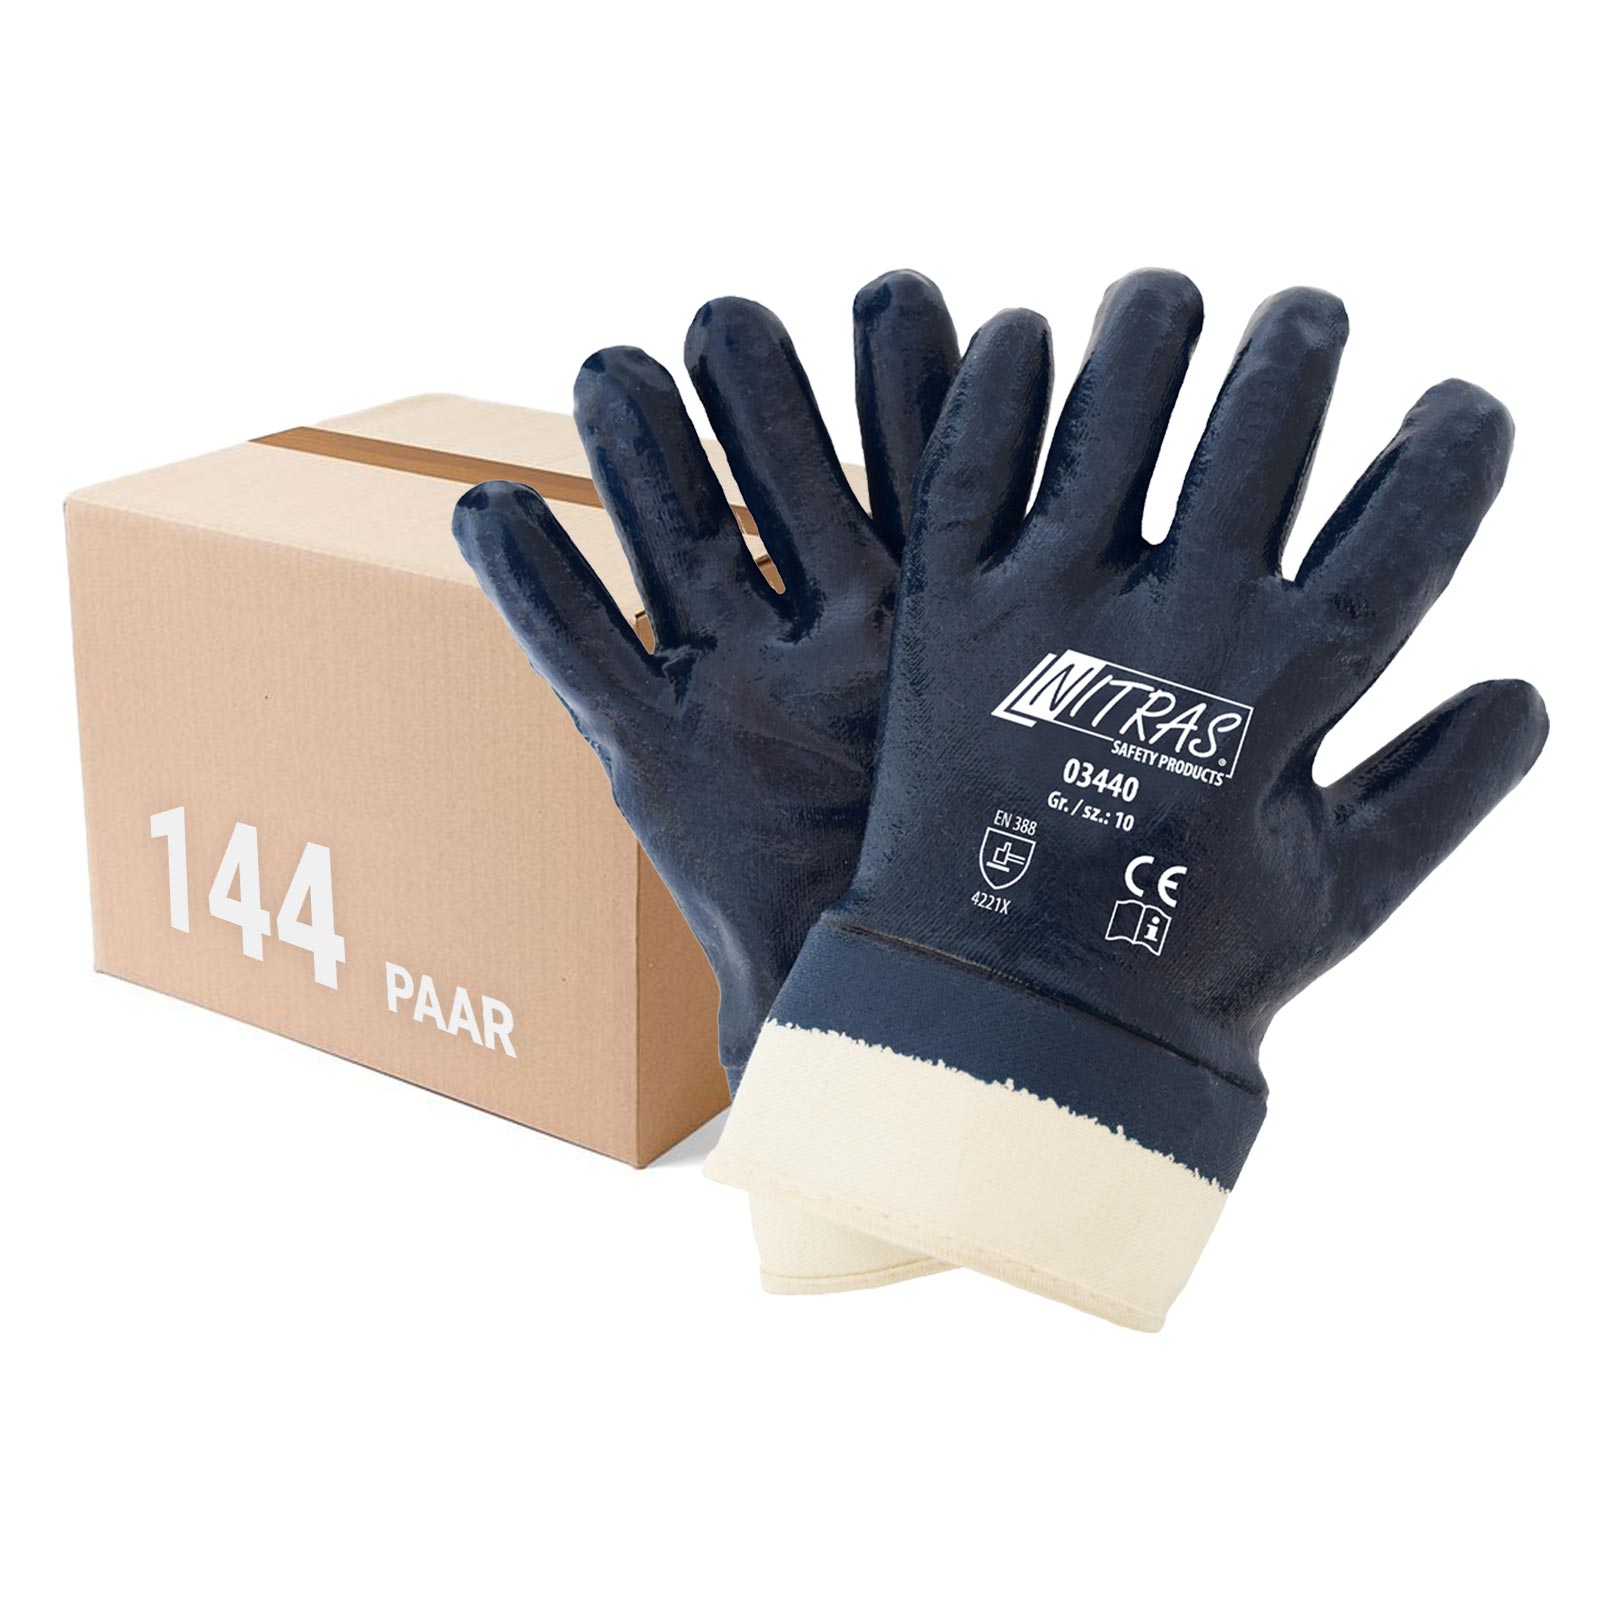 NITRAS 03440 Nitrilhandschuhe Arbeitshandschuhe Handschuhe mit Stulpe - 144 Paar Größe:9 von NITRAS